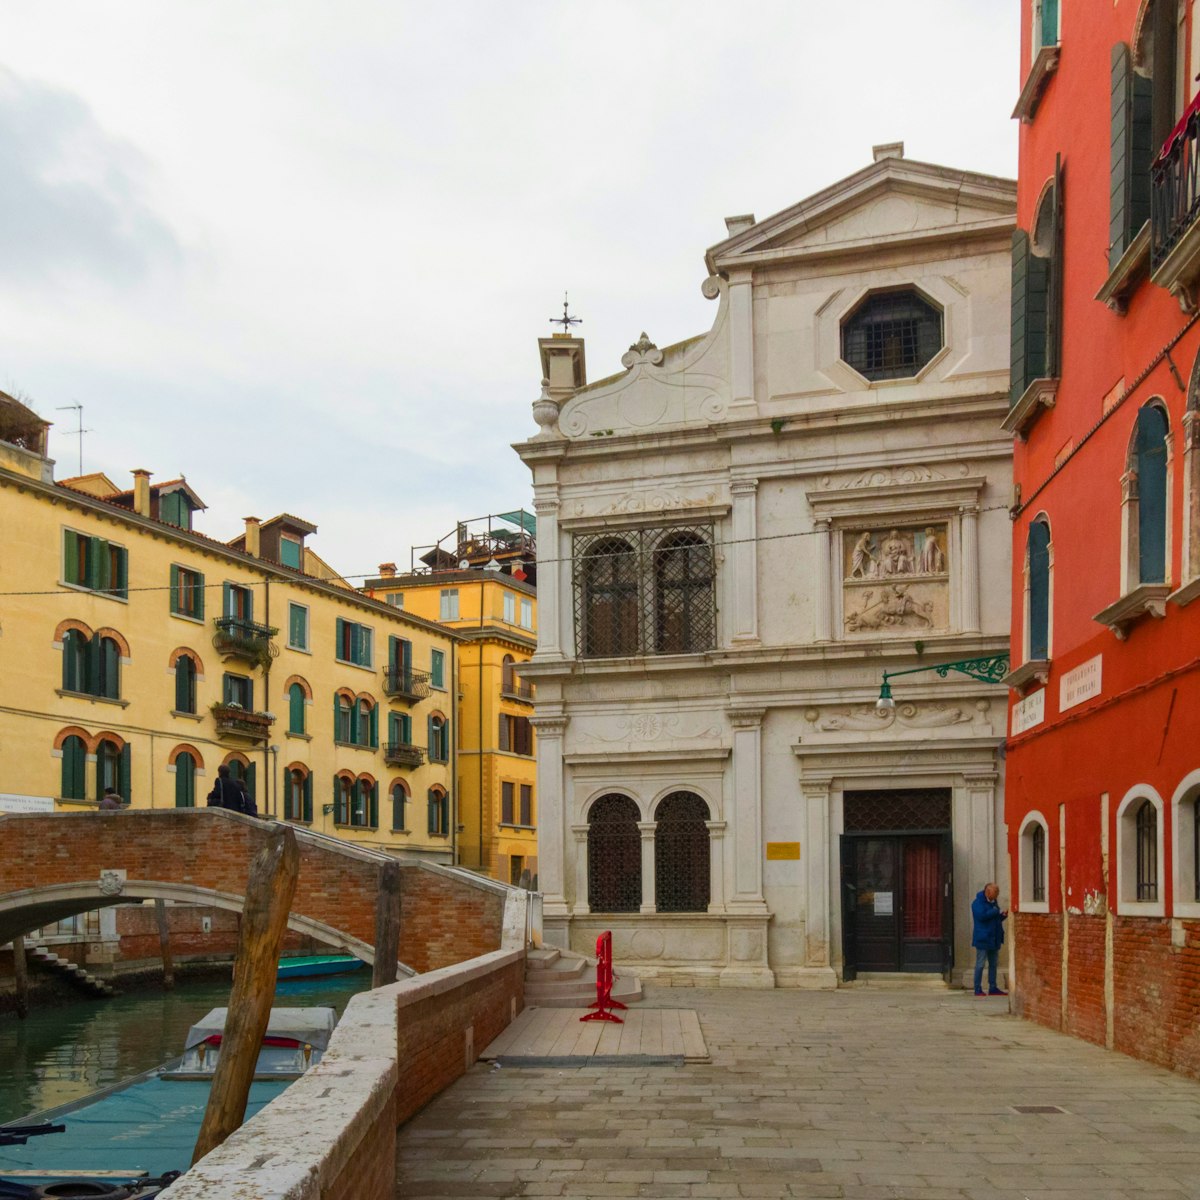 The building of the Scuola Dalmata dei Santi Giorgio e Trifone that hosts inside the paintings of Carpaccio